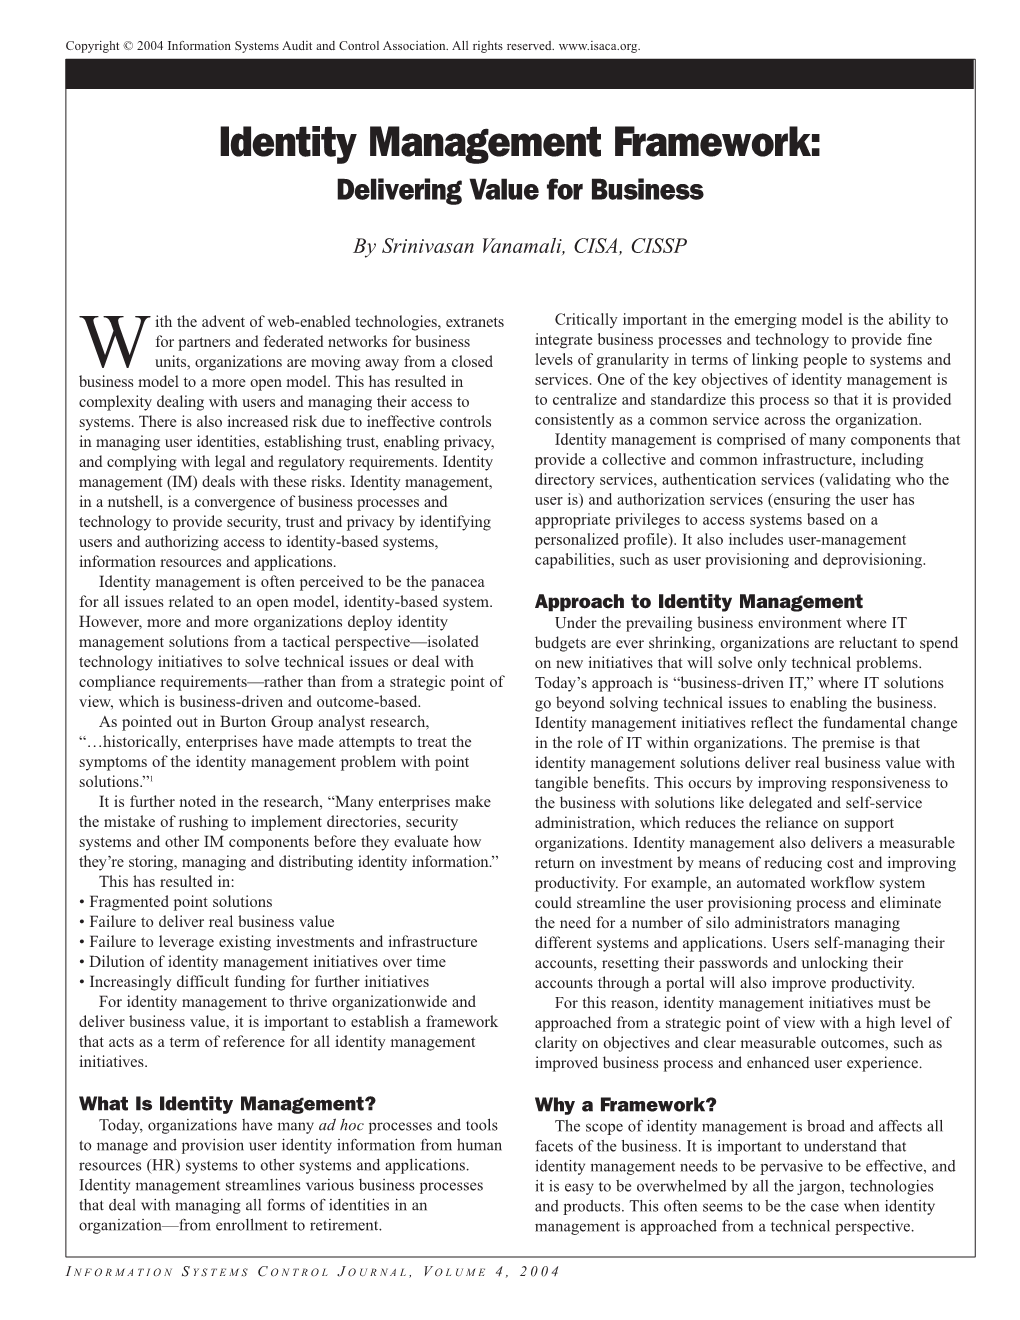 Identity Management Framework: Delivering Value for Business